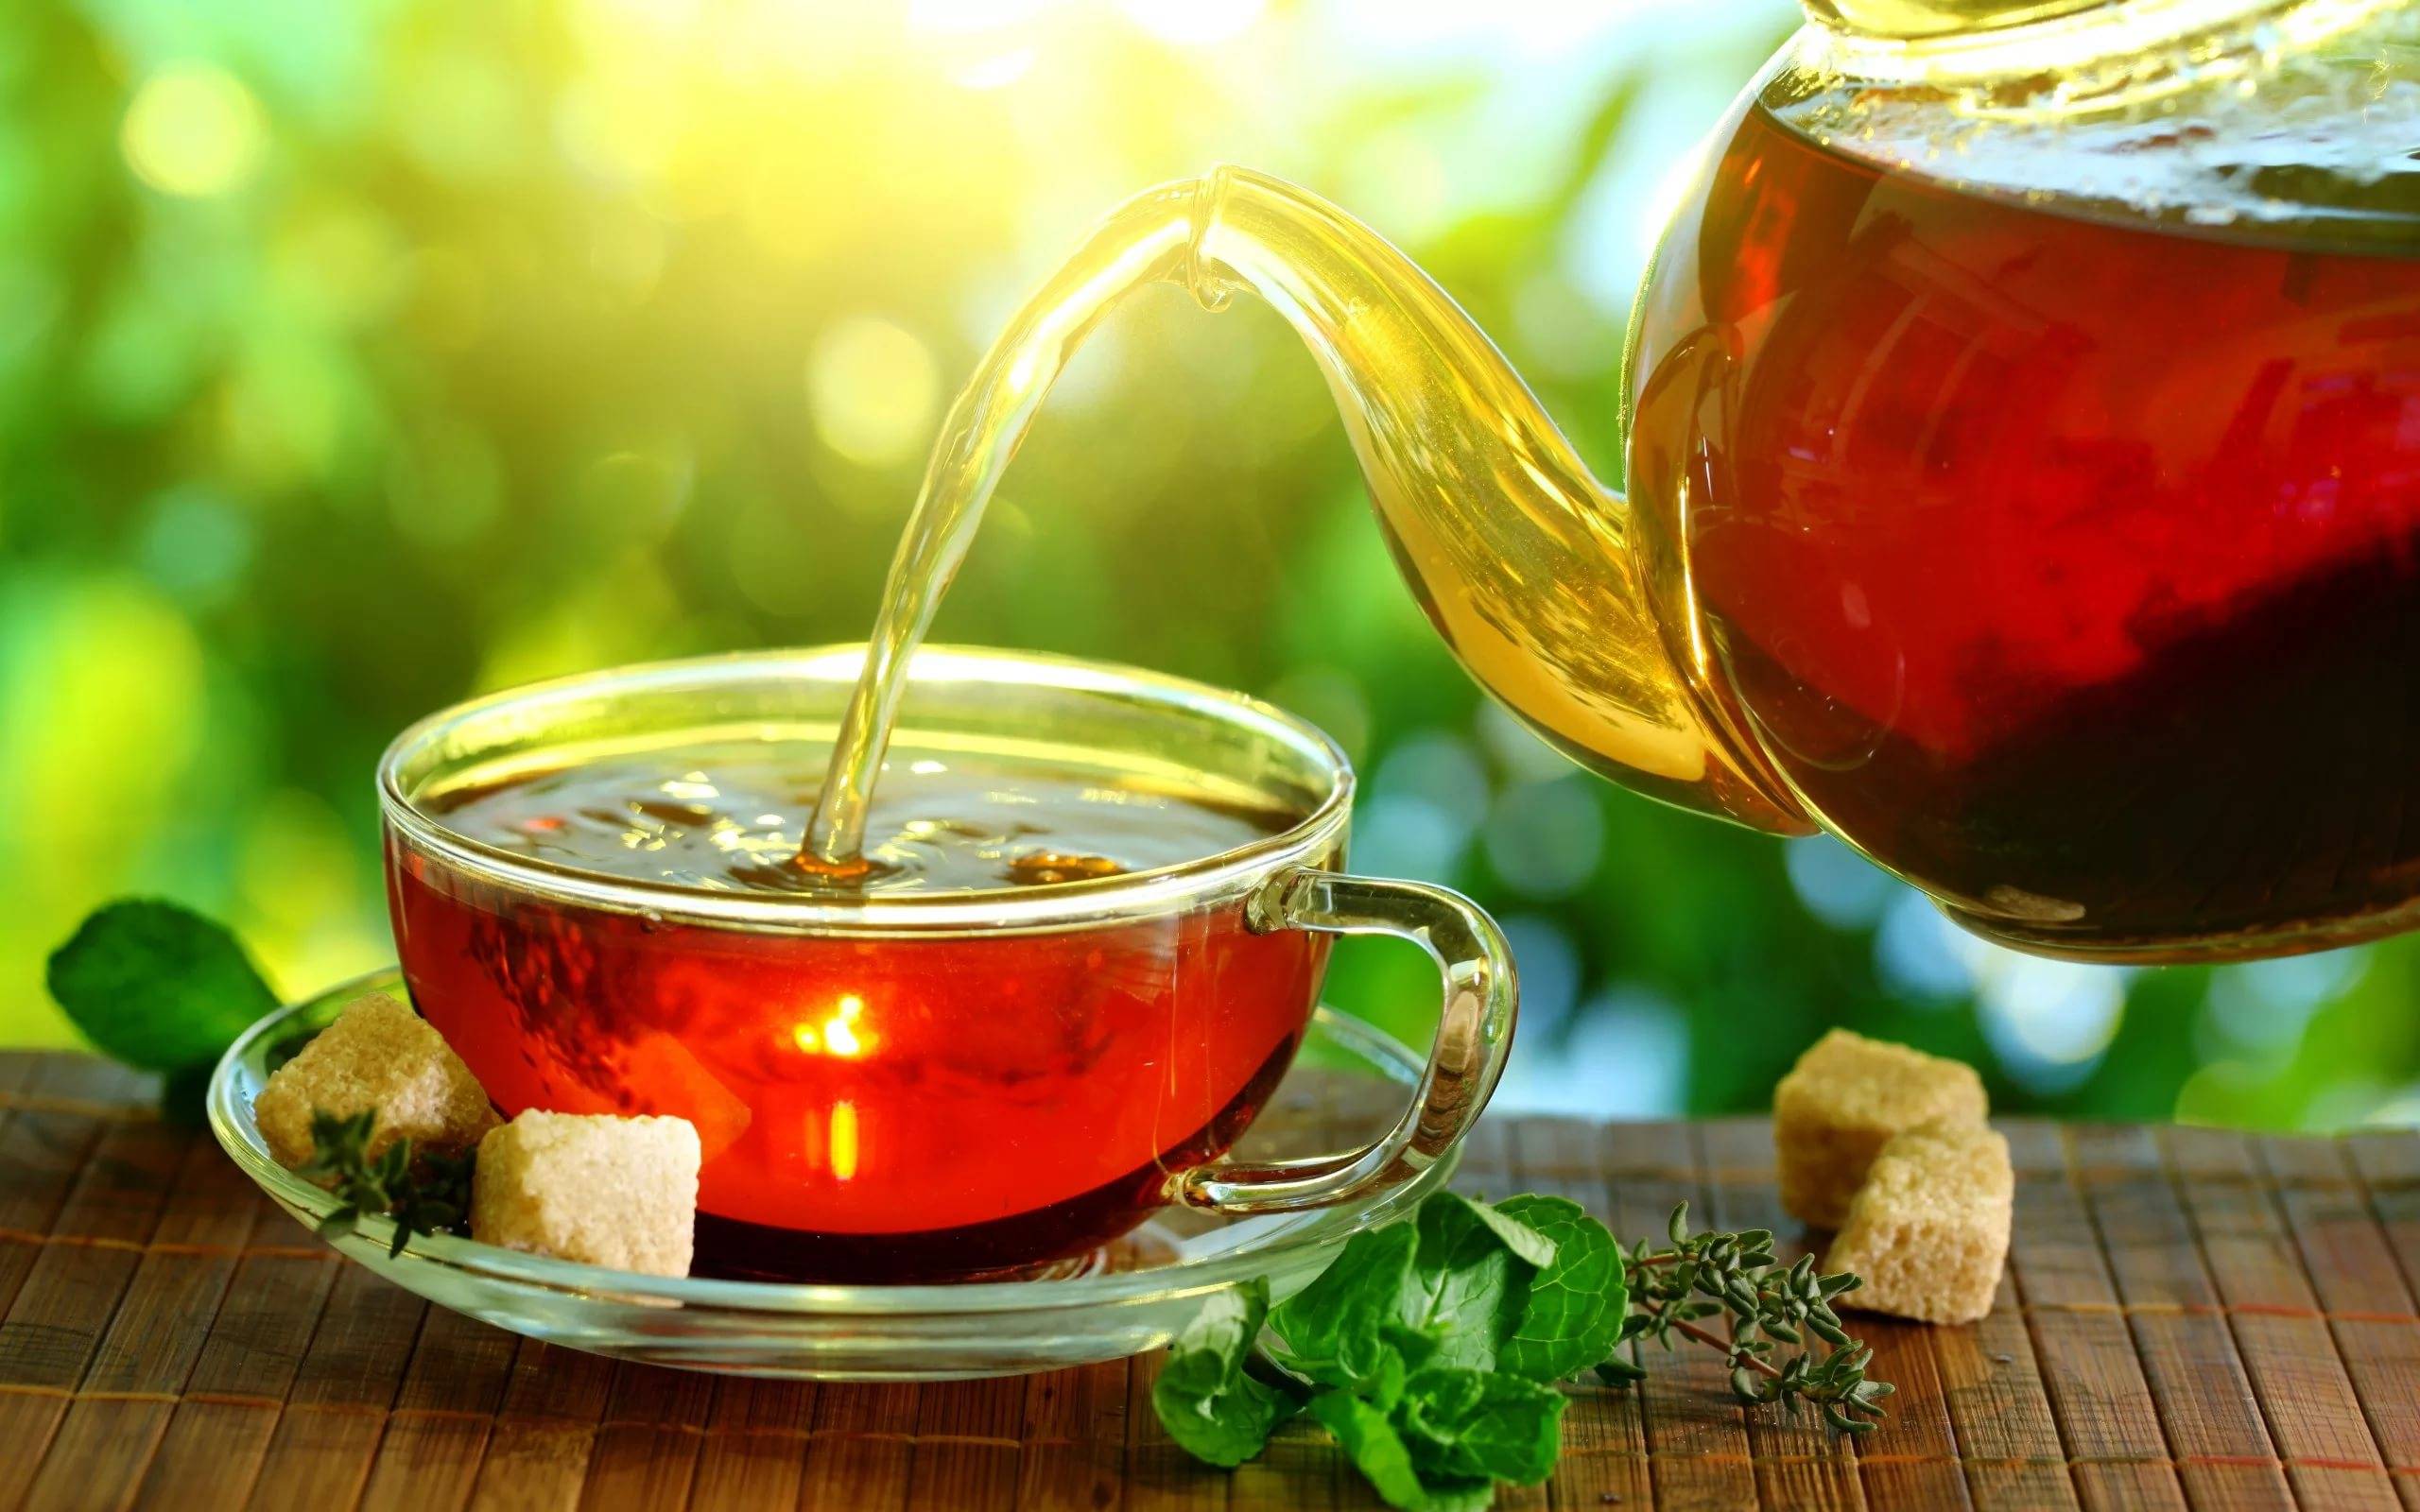 Чай с лимоном: полезные свойства и противопоказания